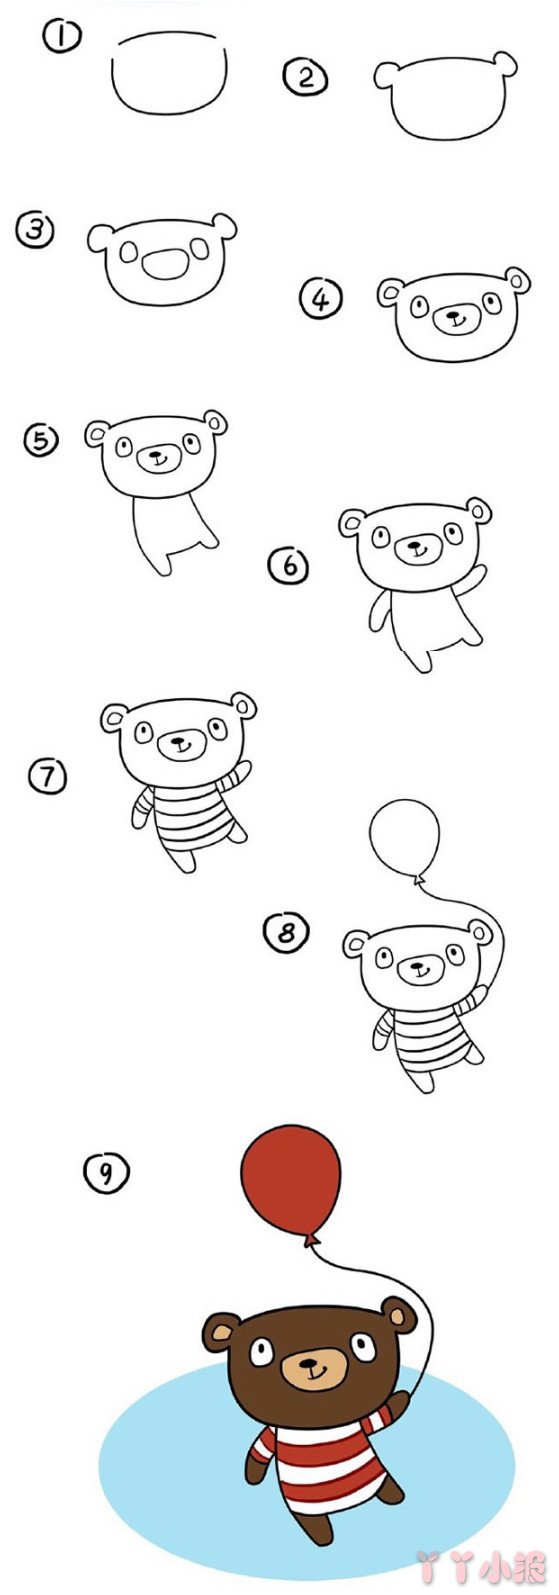  拿小气球的小熊简笔画怎么画涂色步骤教程